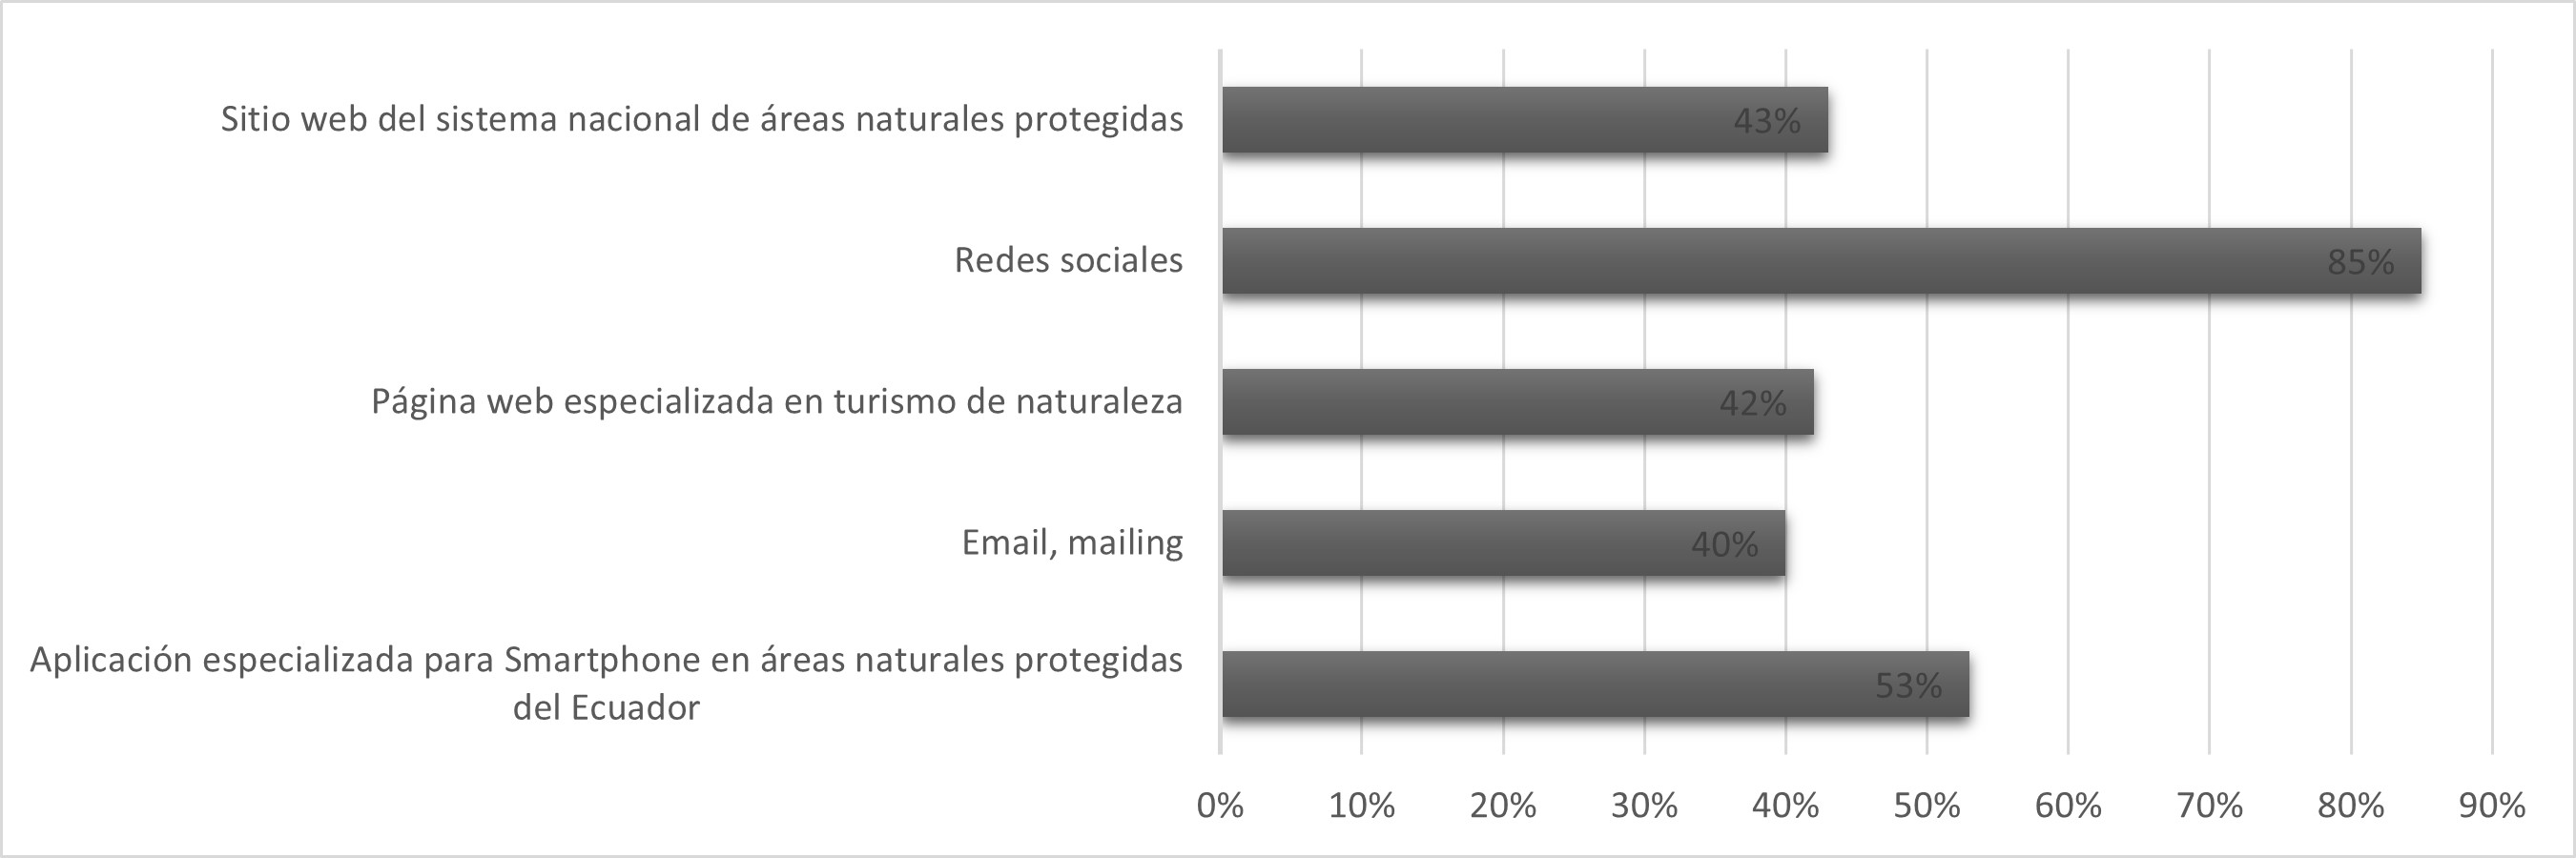 Preferencia de los visitantes en la utilización de medios digitales para recibir información sobre las áreas naturales protegidas en el Ecuador continental.